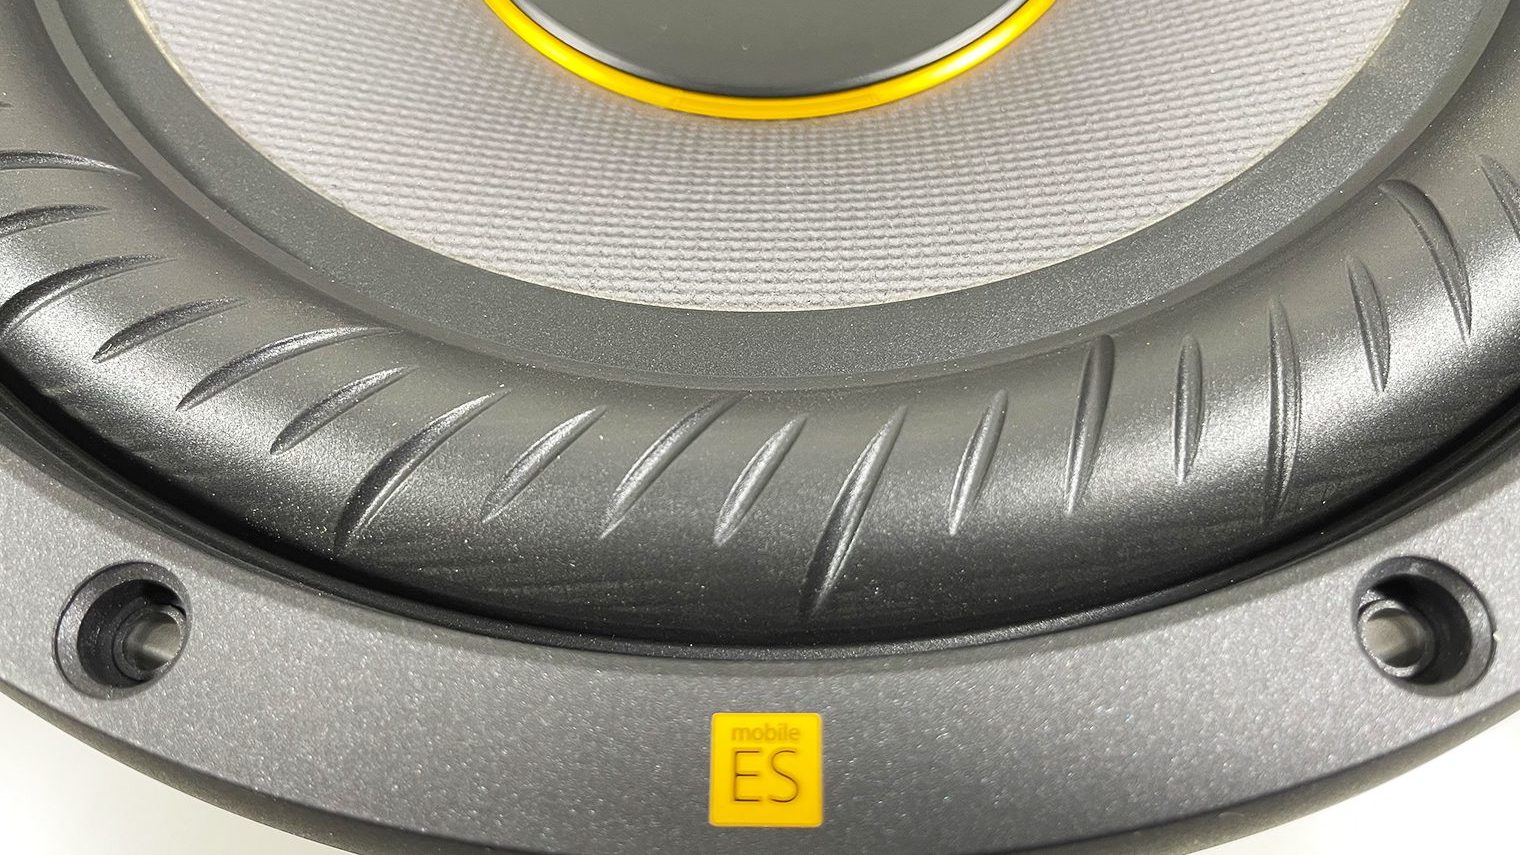 Sony Mobile ES 12-дюймовый сабвуфер, разделенный вырезом по краю